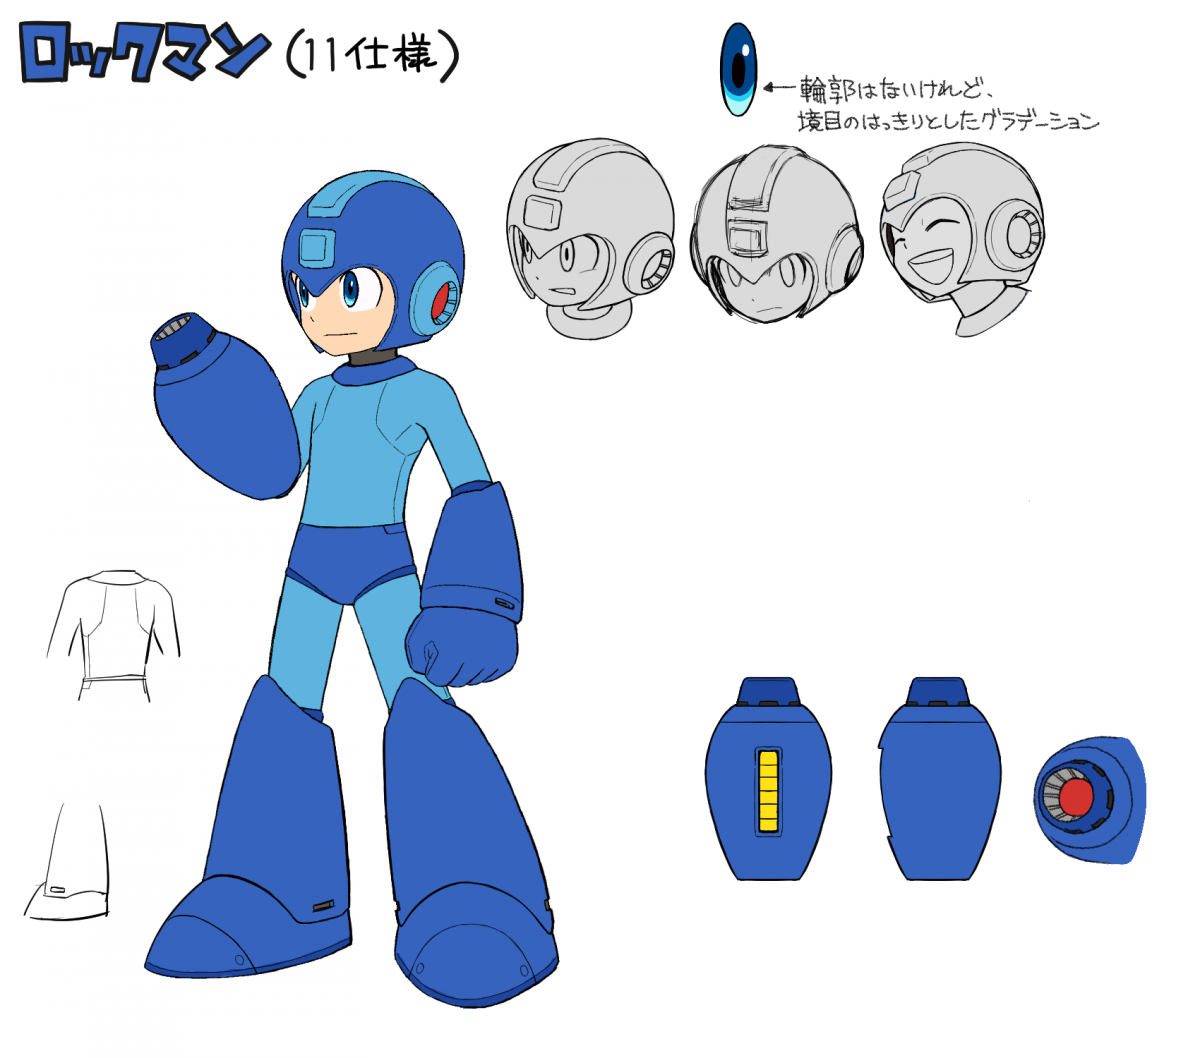 Image Mega Man 11 2